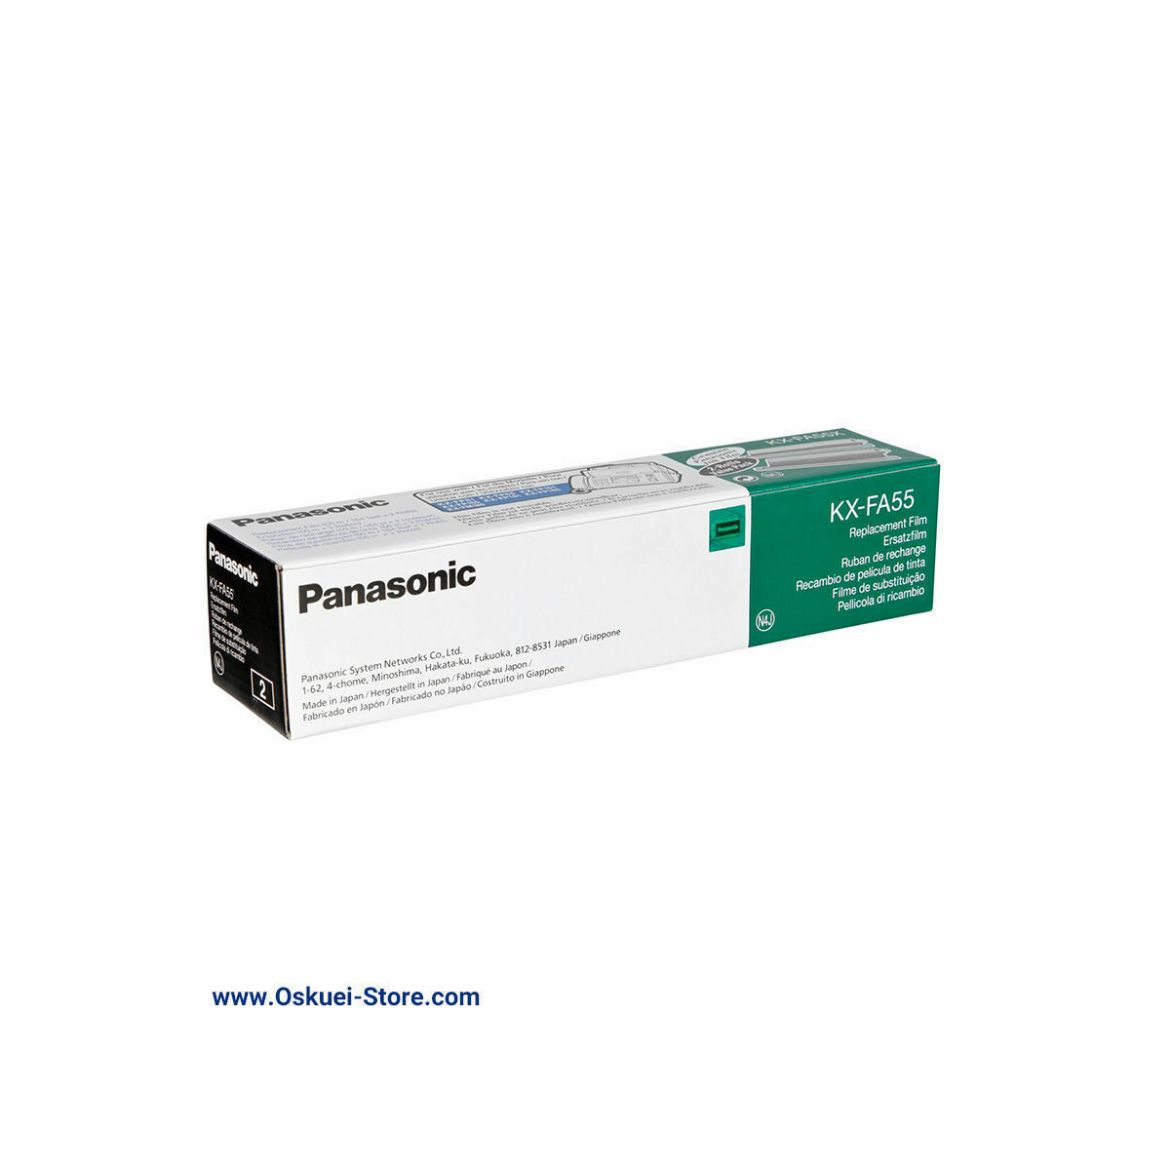 Panasonic KX-FA55 Film Roll Box For Panasonic Fax Machines